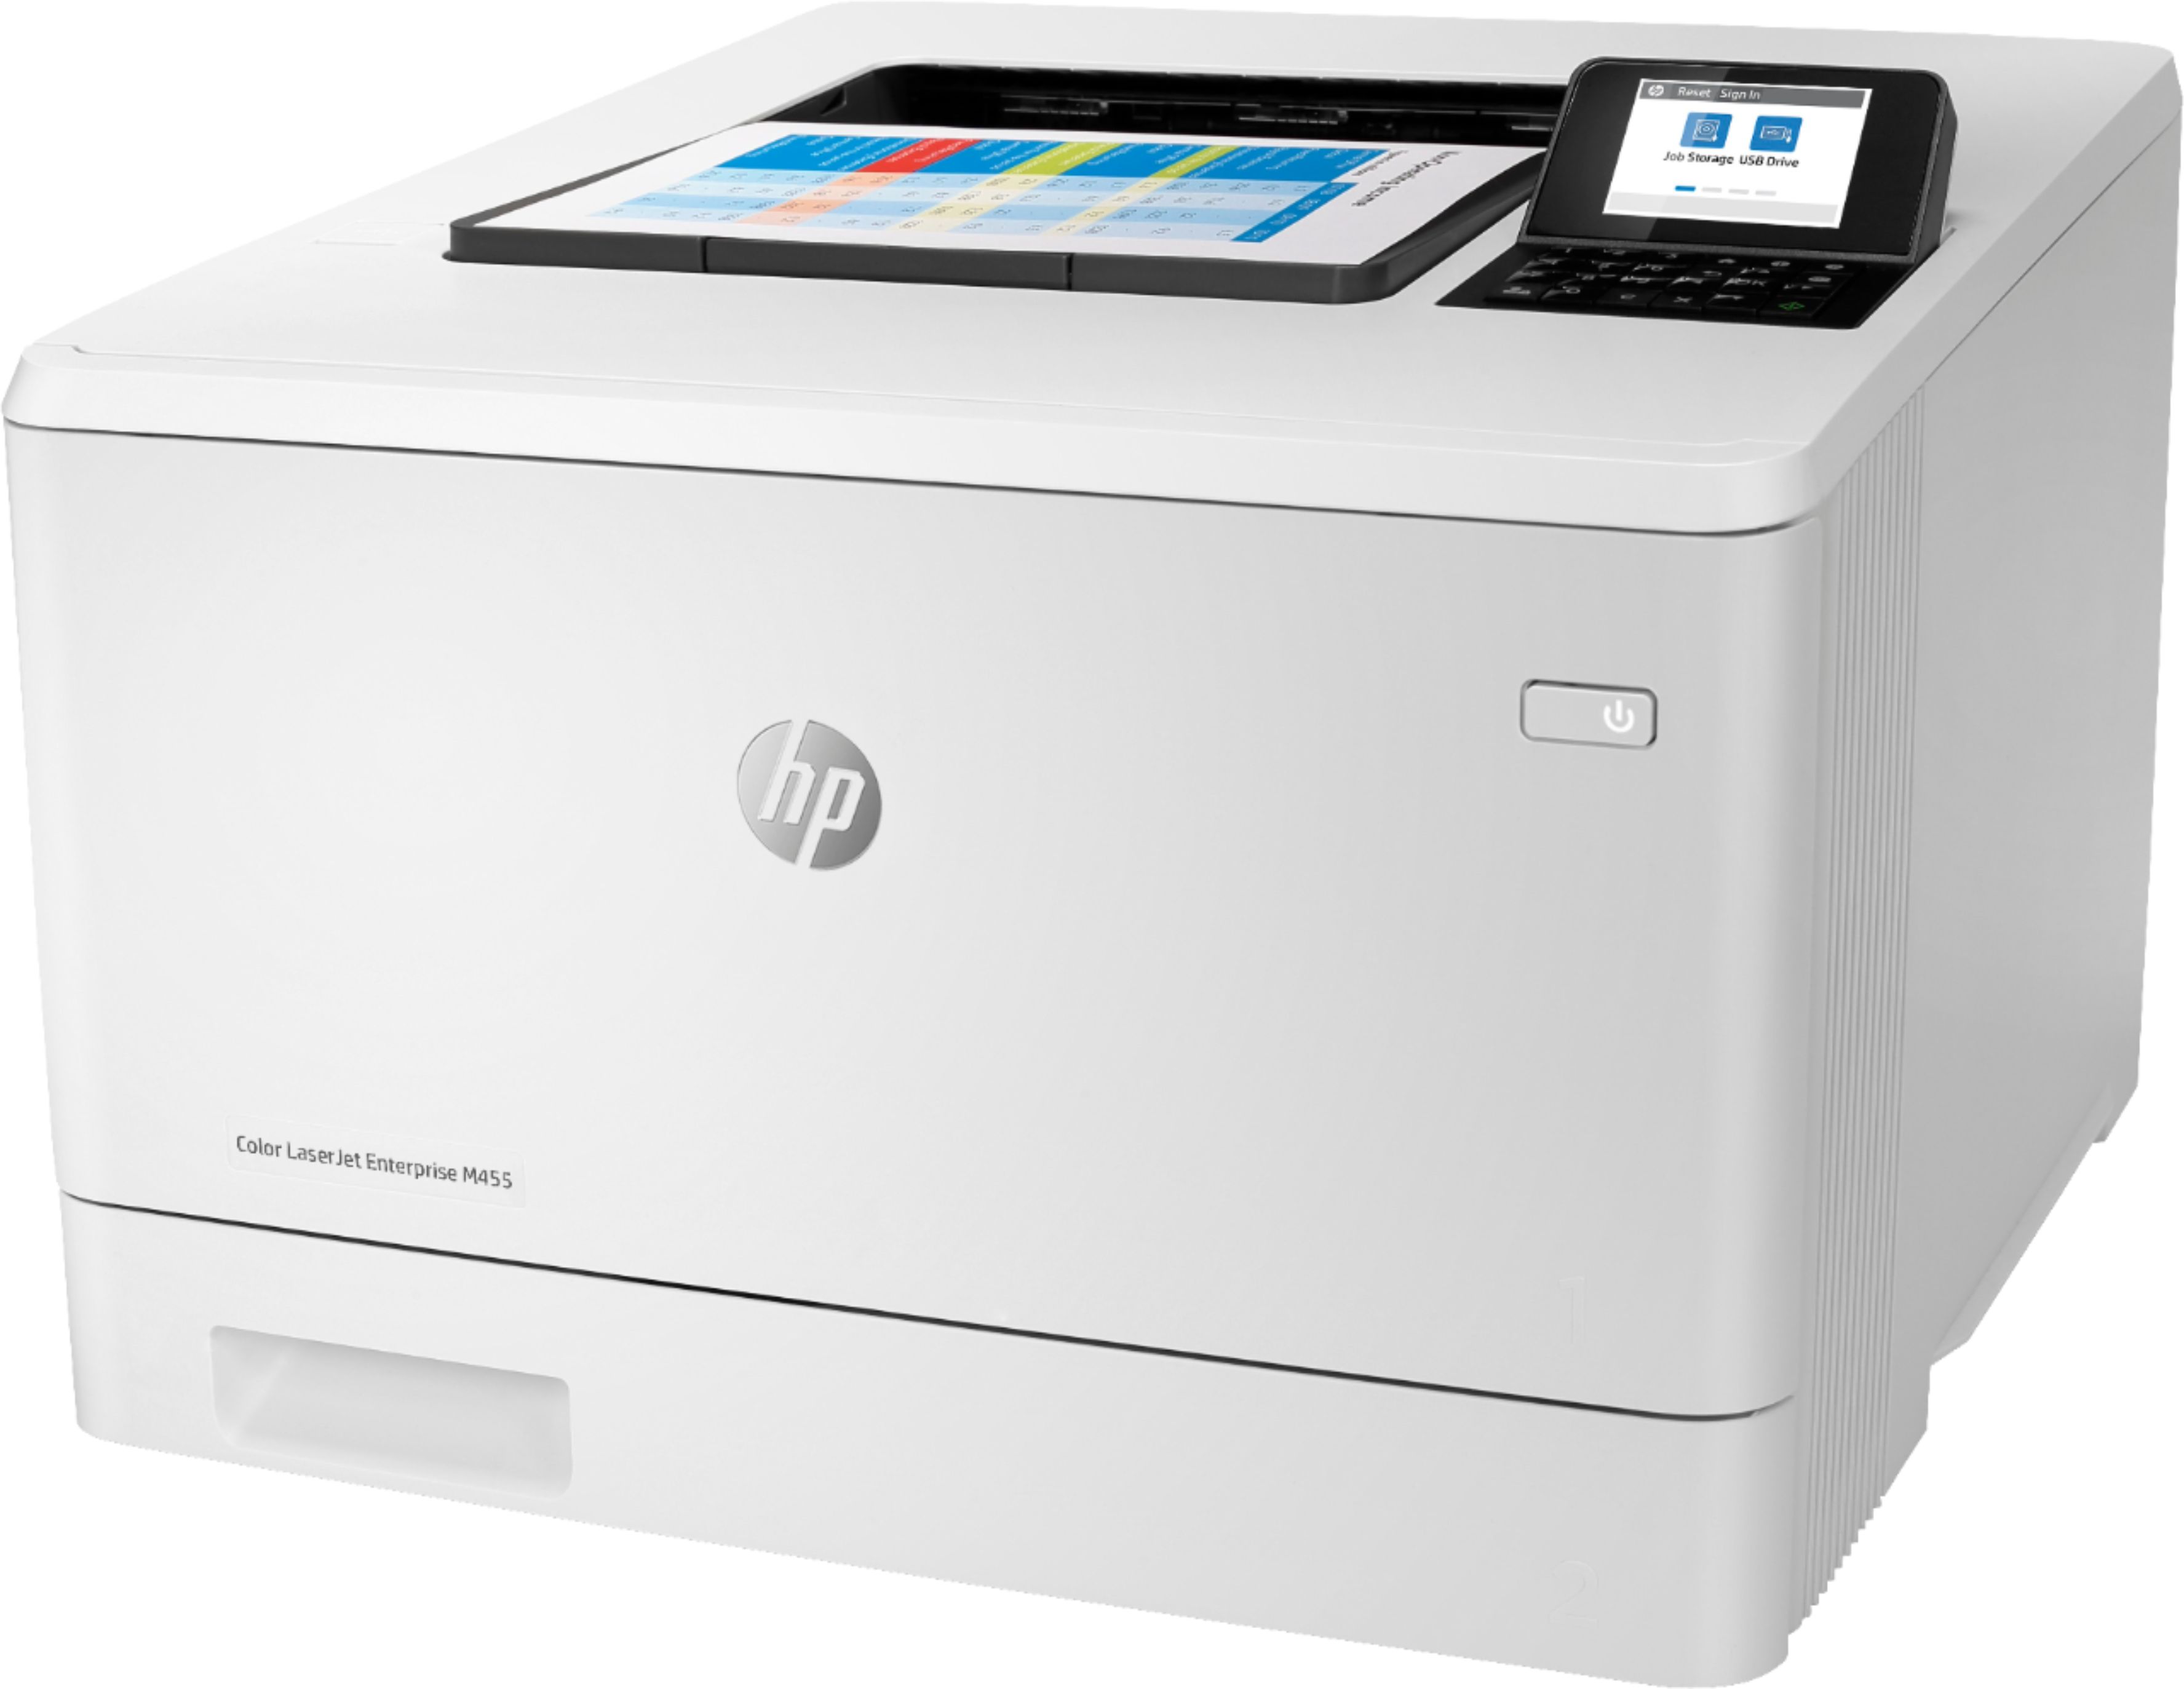 Angle View: HP - LaserJet Enterprise M455dn Color Laser Printer - White